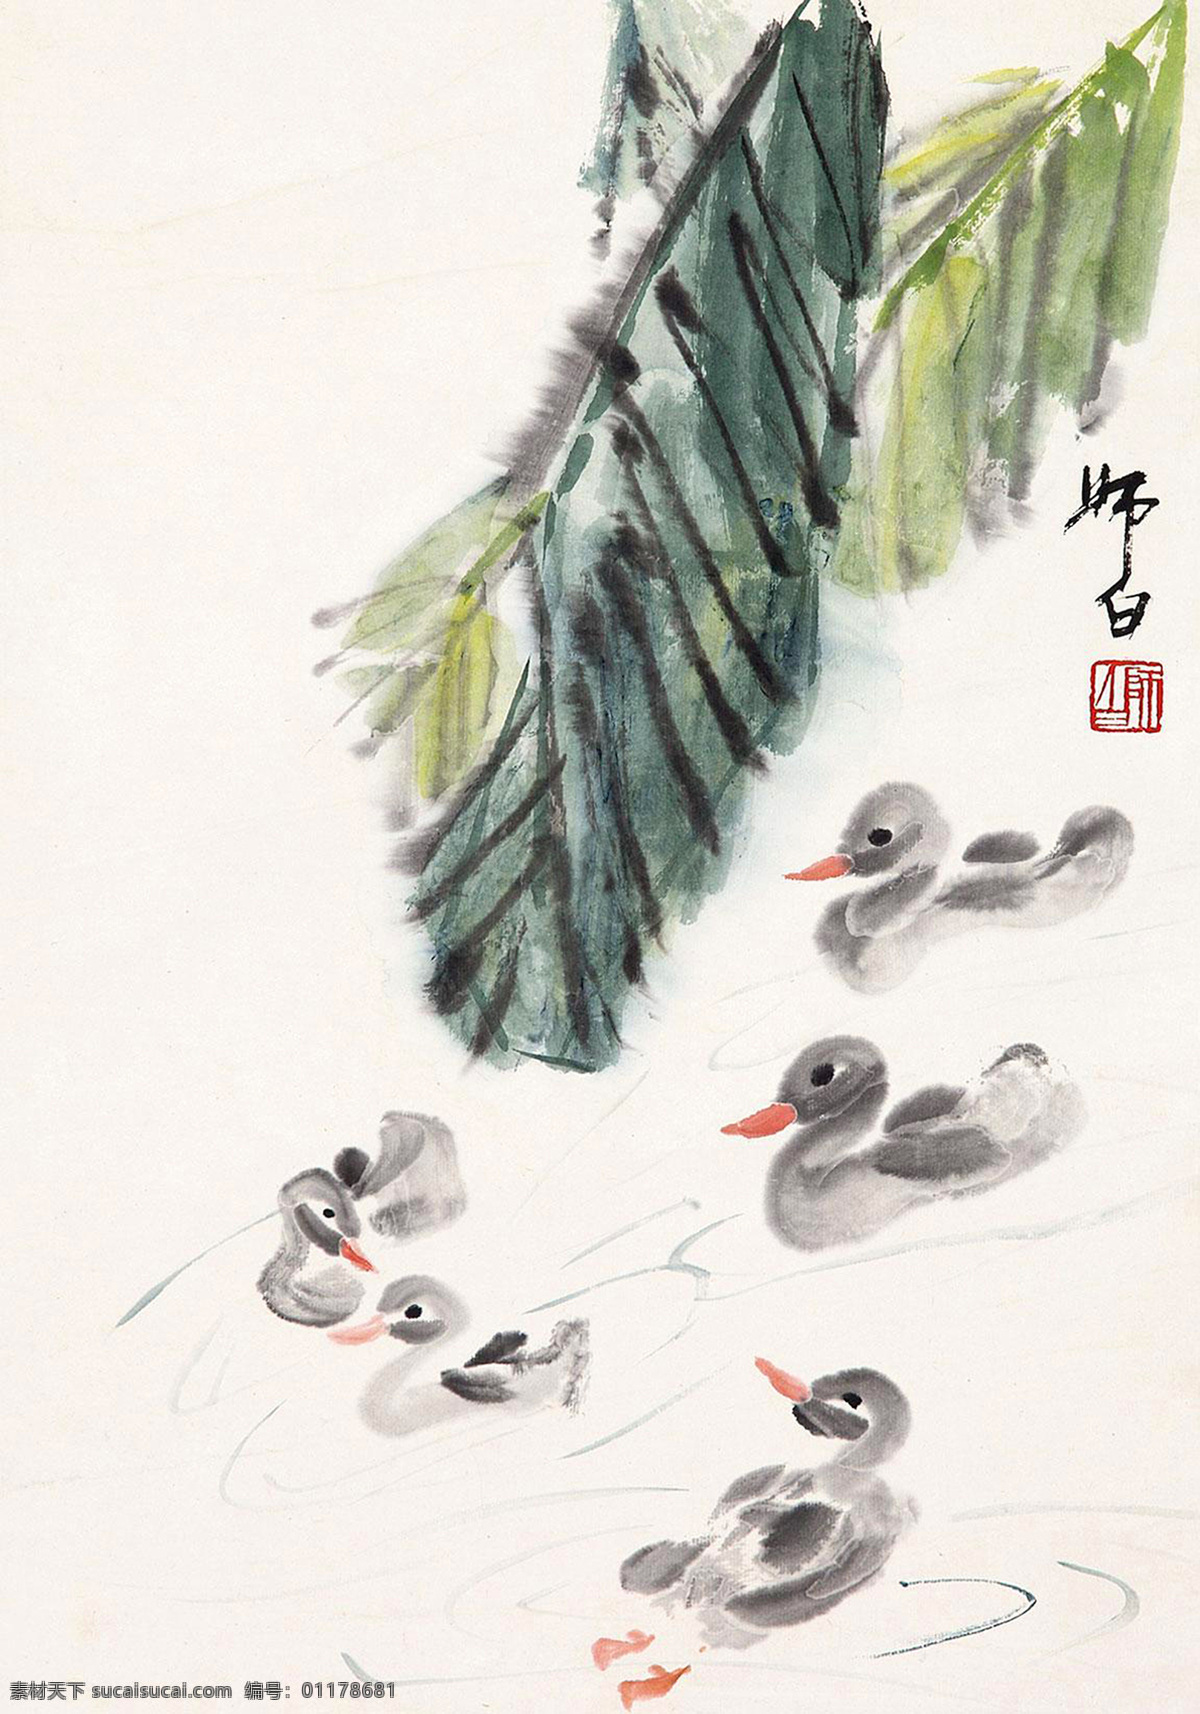 鸭戏图 娄师白 国画 雏鸭 鸭子 芭蕉 草虫 水墨画 花鸟 中国画 绘画书法 文化艺术